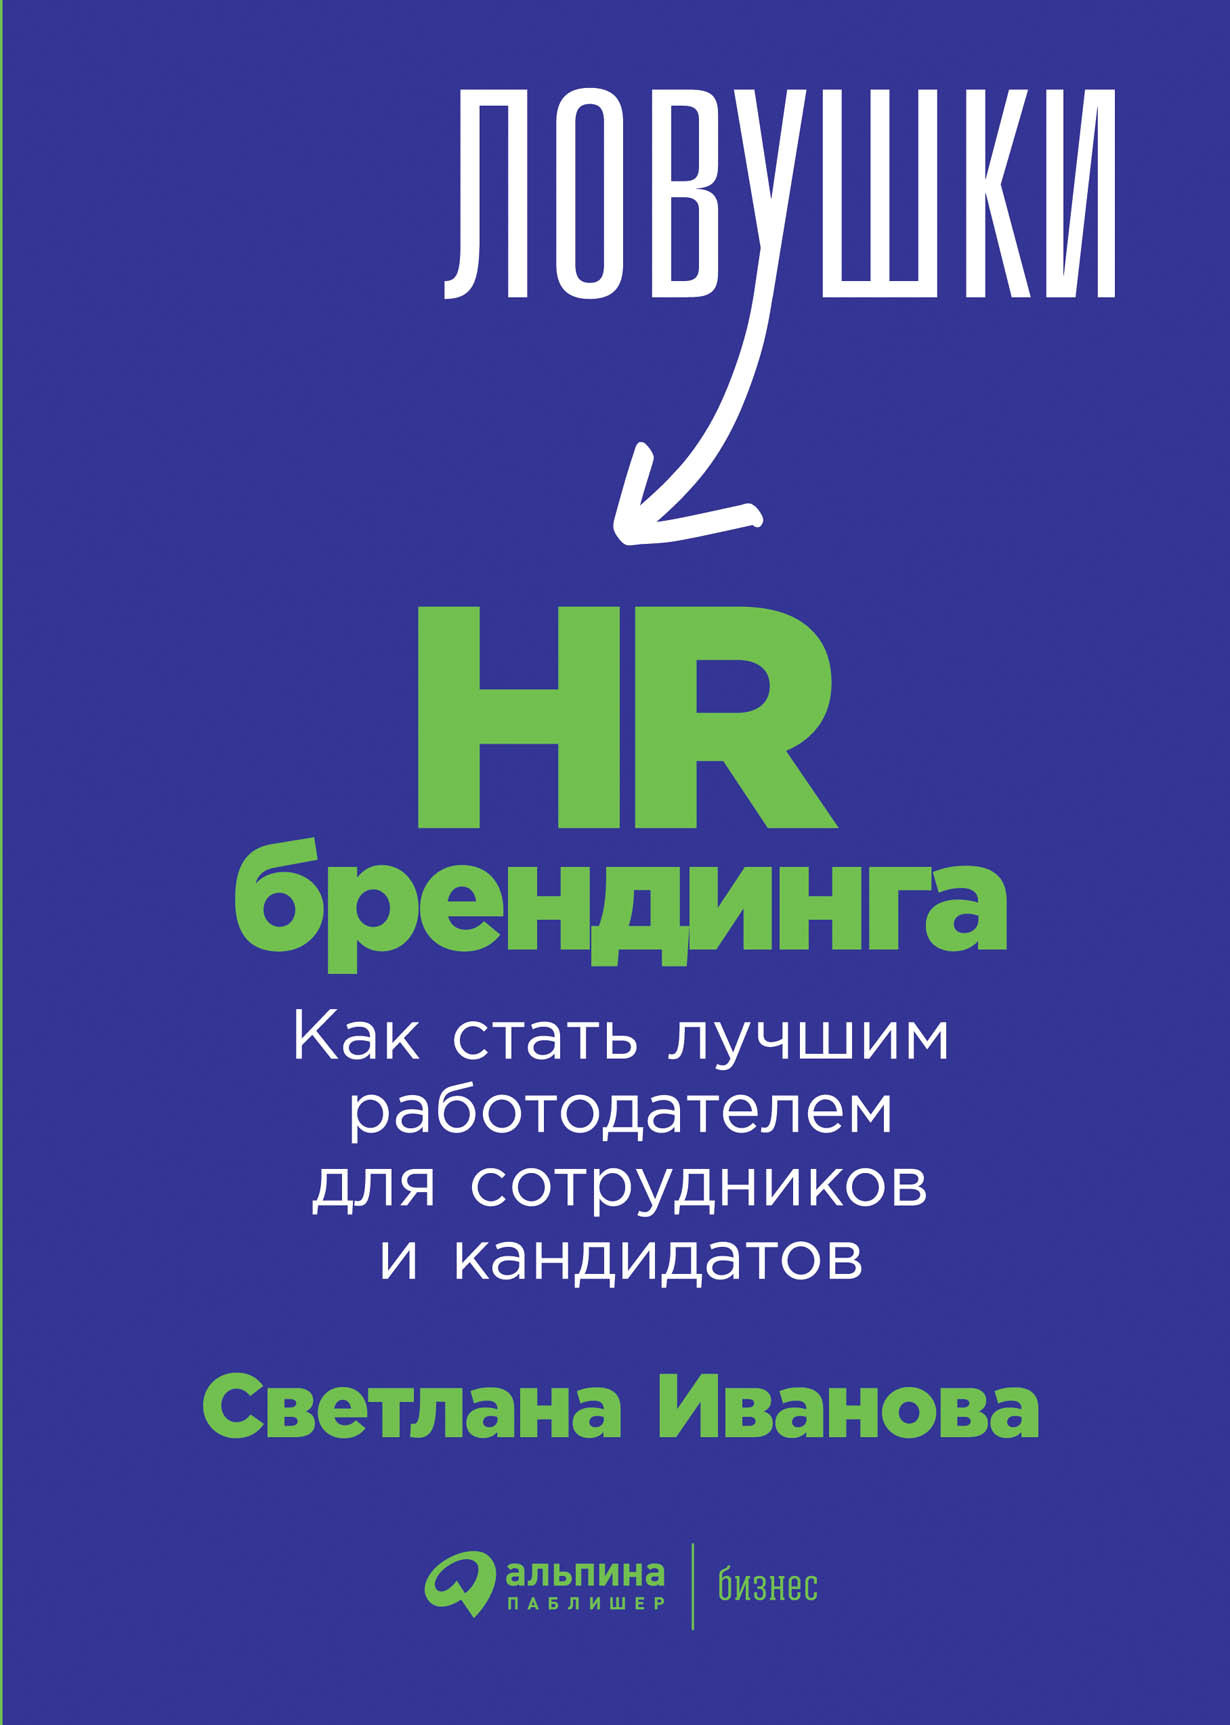 Ловушки HR-брендинга: обложка.